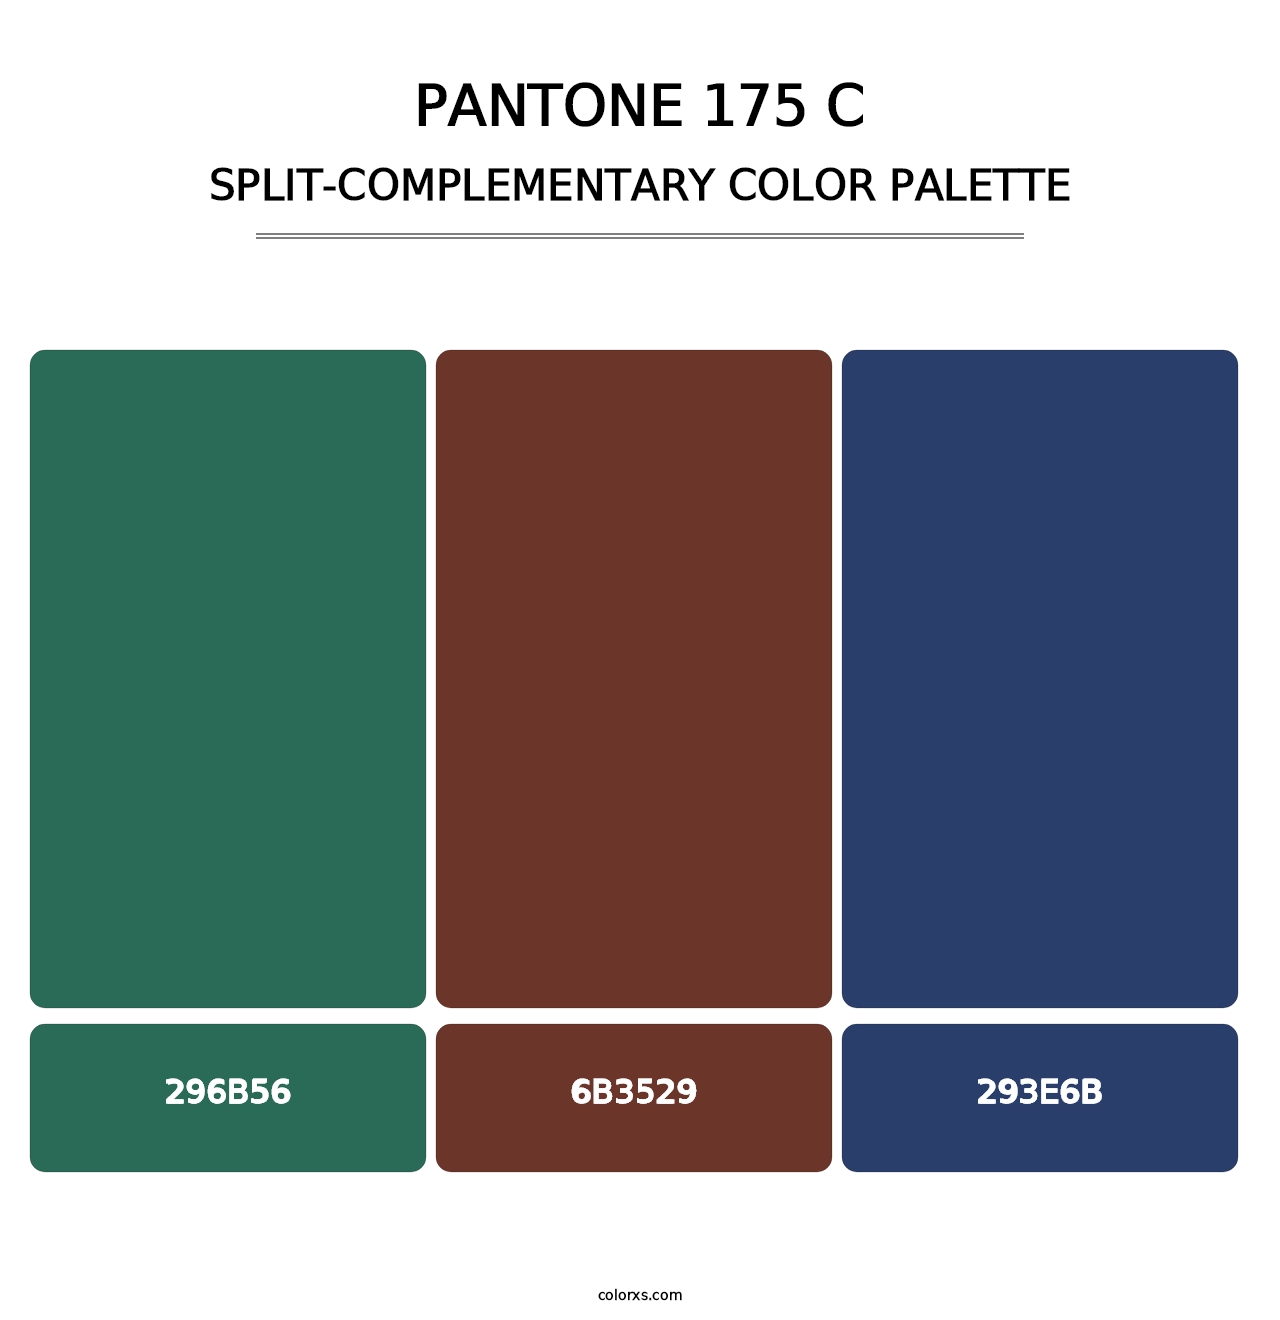 PANTONE 175 C - Split-Complementary Color Palette